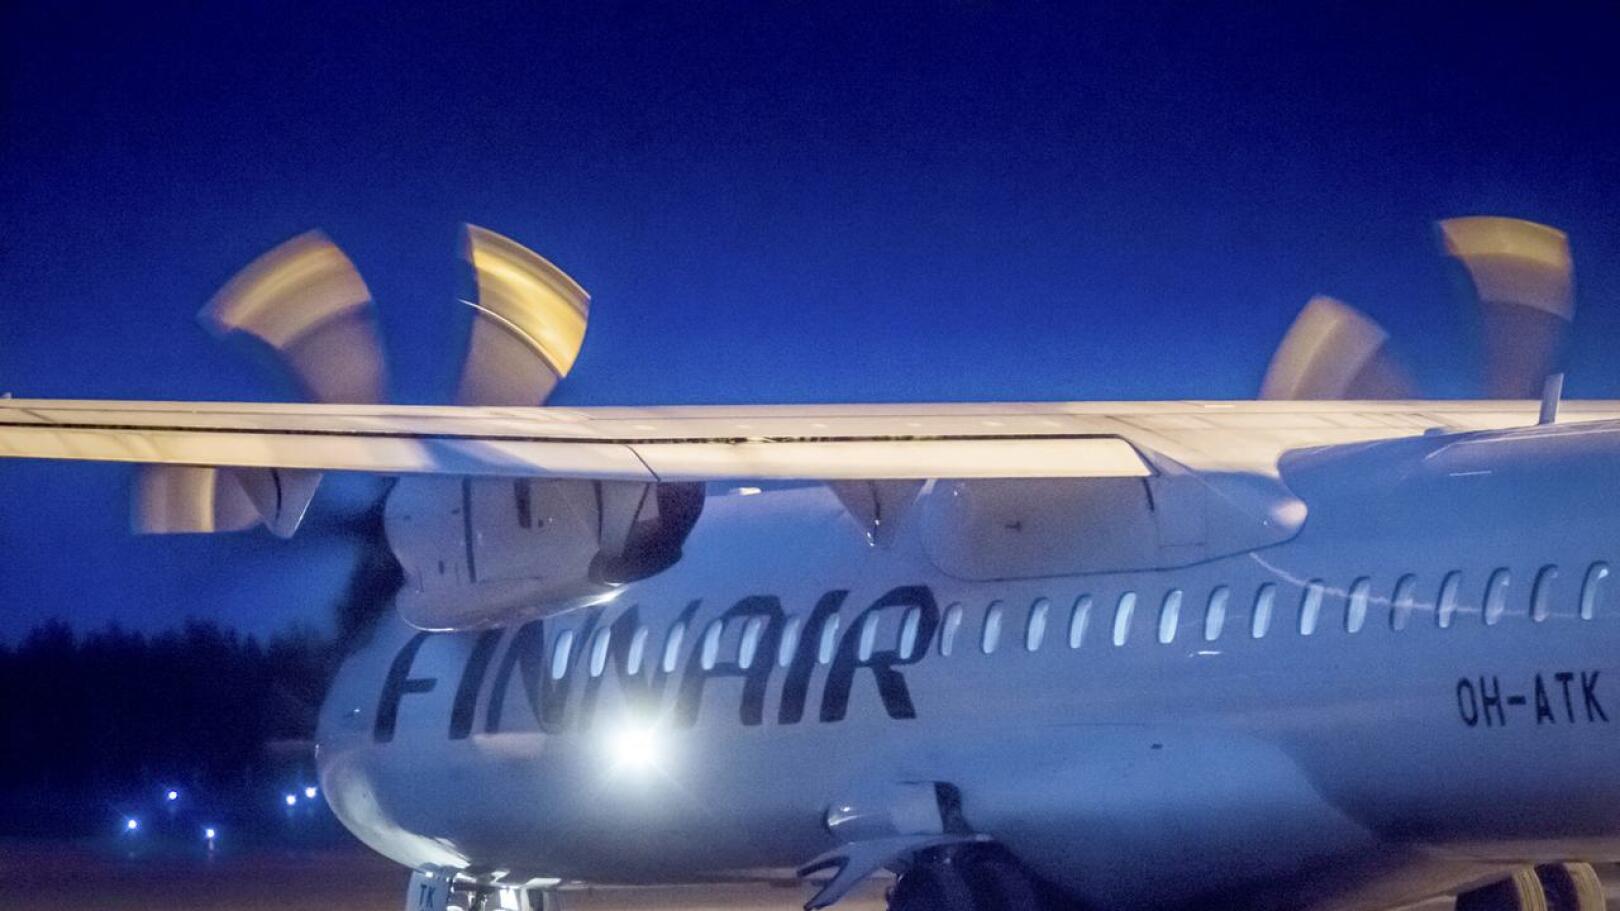 Finnairin kone lähti toistaiseksi viimeistä kertaa Kruunupyystä maaliskuussa, koronakriisin alussa. Nyt lentotauko on venymässä loppuvuoteen asti.